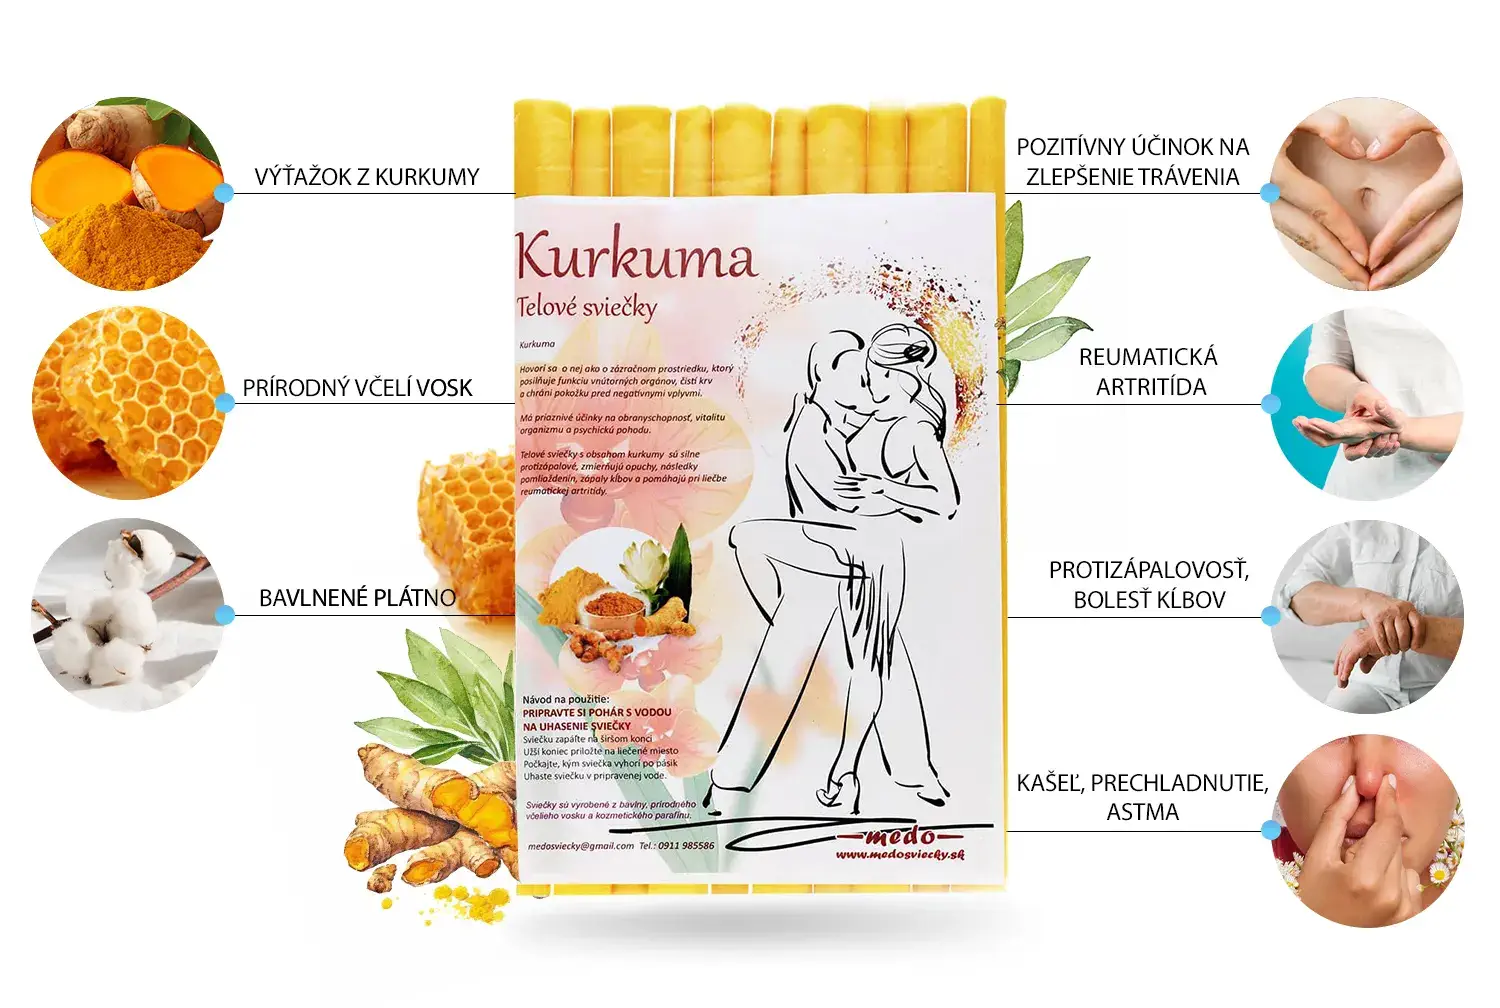 Telové sviečky Kurkuma - pozitívne účinky